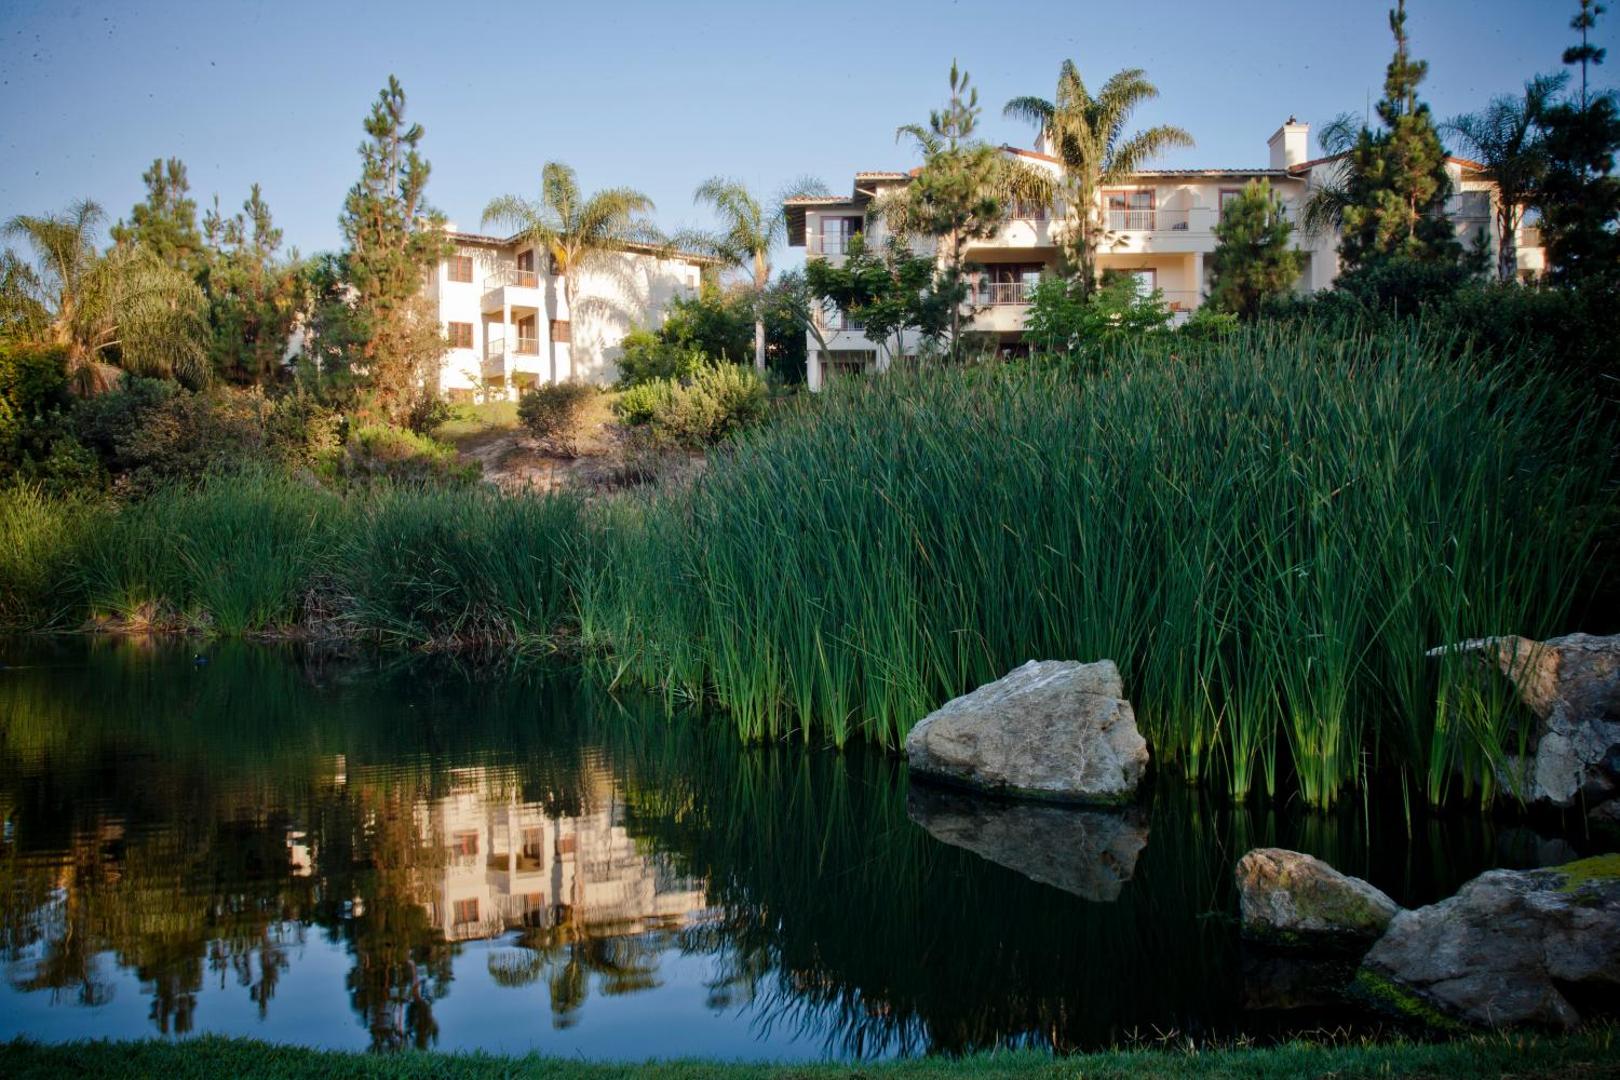 Four Seasons Residence Club Aviara, North San Diego